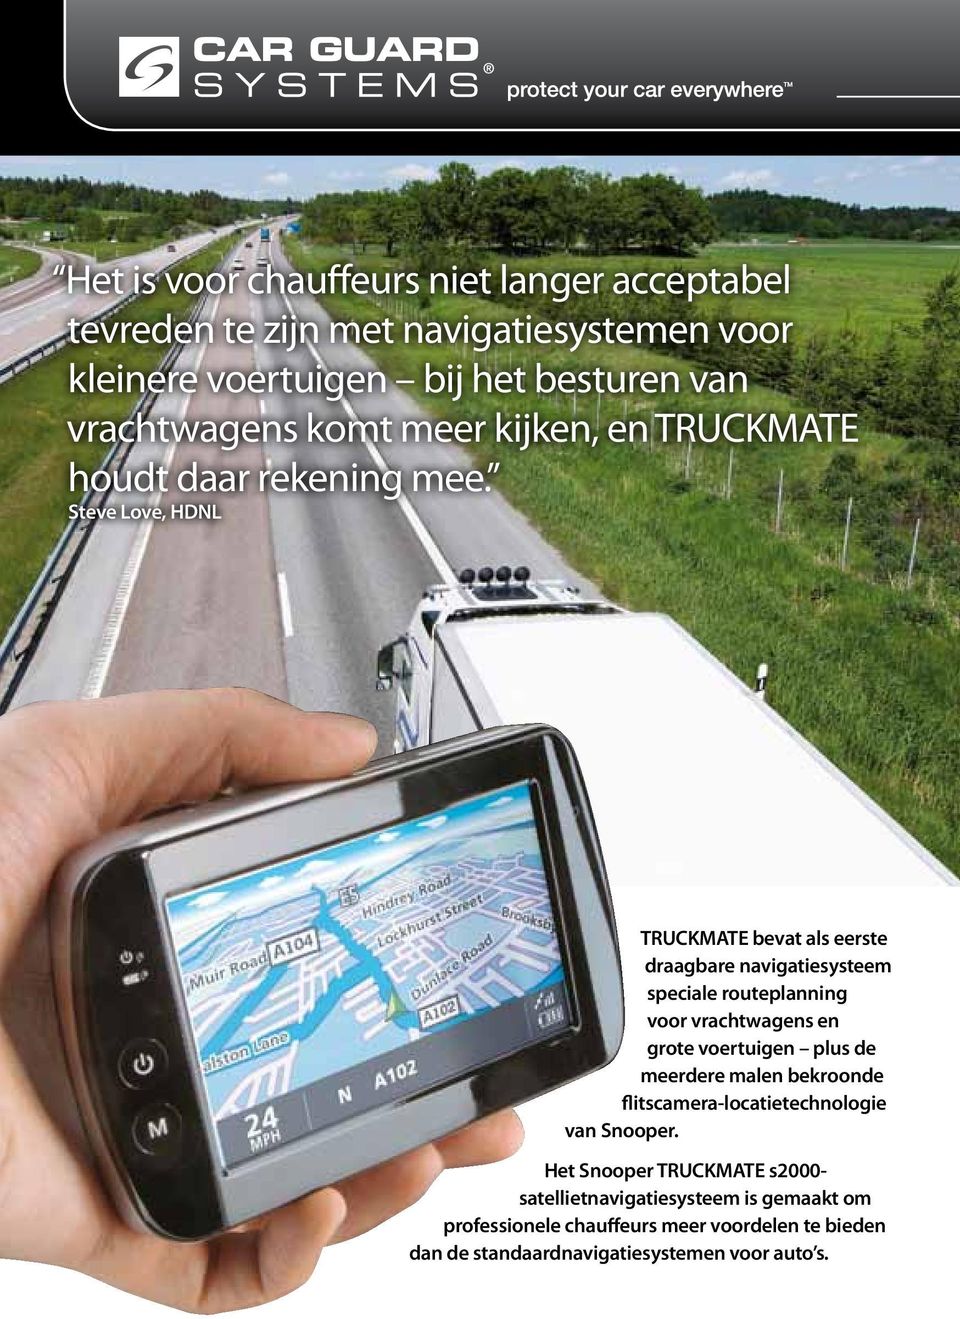 Steve Love, HDNL TRUCKMATE bevat als eerste draagbare navigatiesysteem speciale routeplanning voor vrachtwagens en grote voertuigen plus de